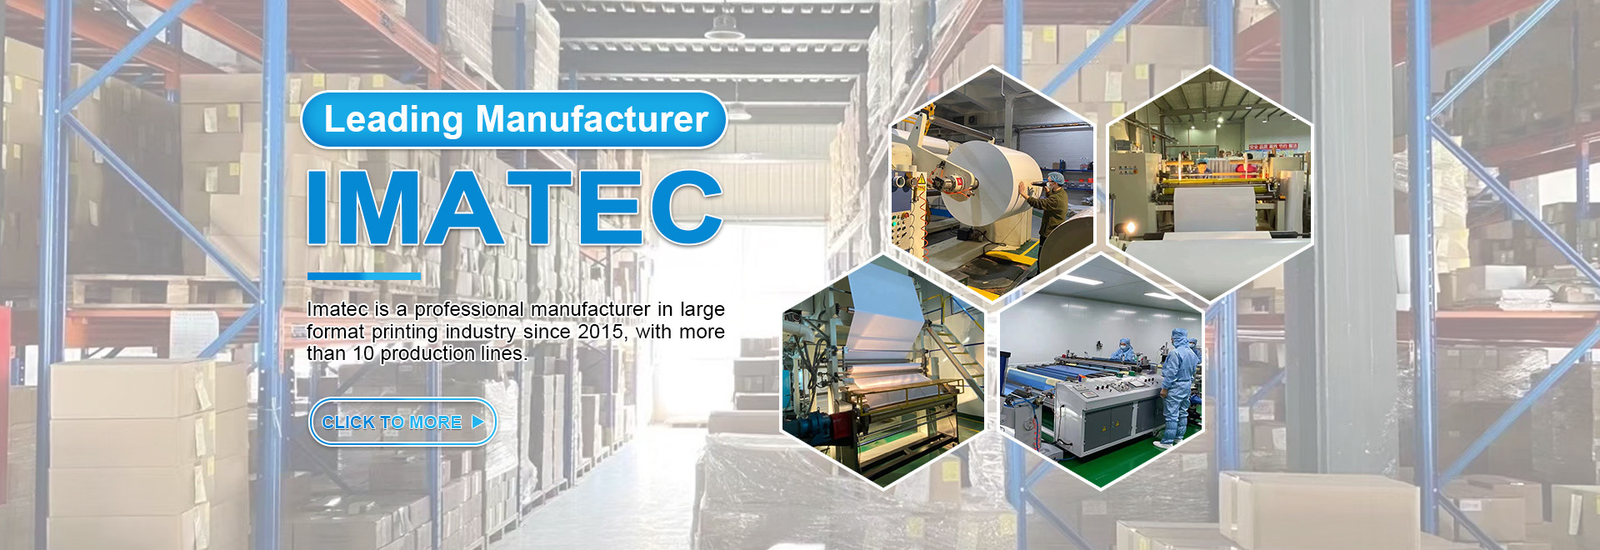 Imatec Imaging Co., Ltd. linha de produção do fabricante